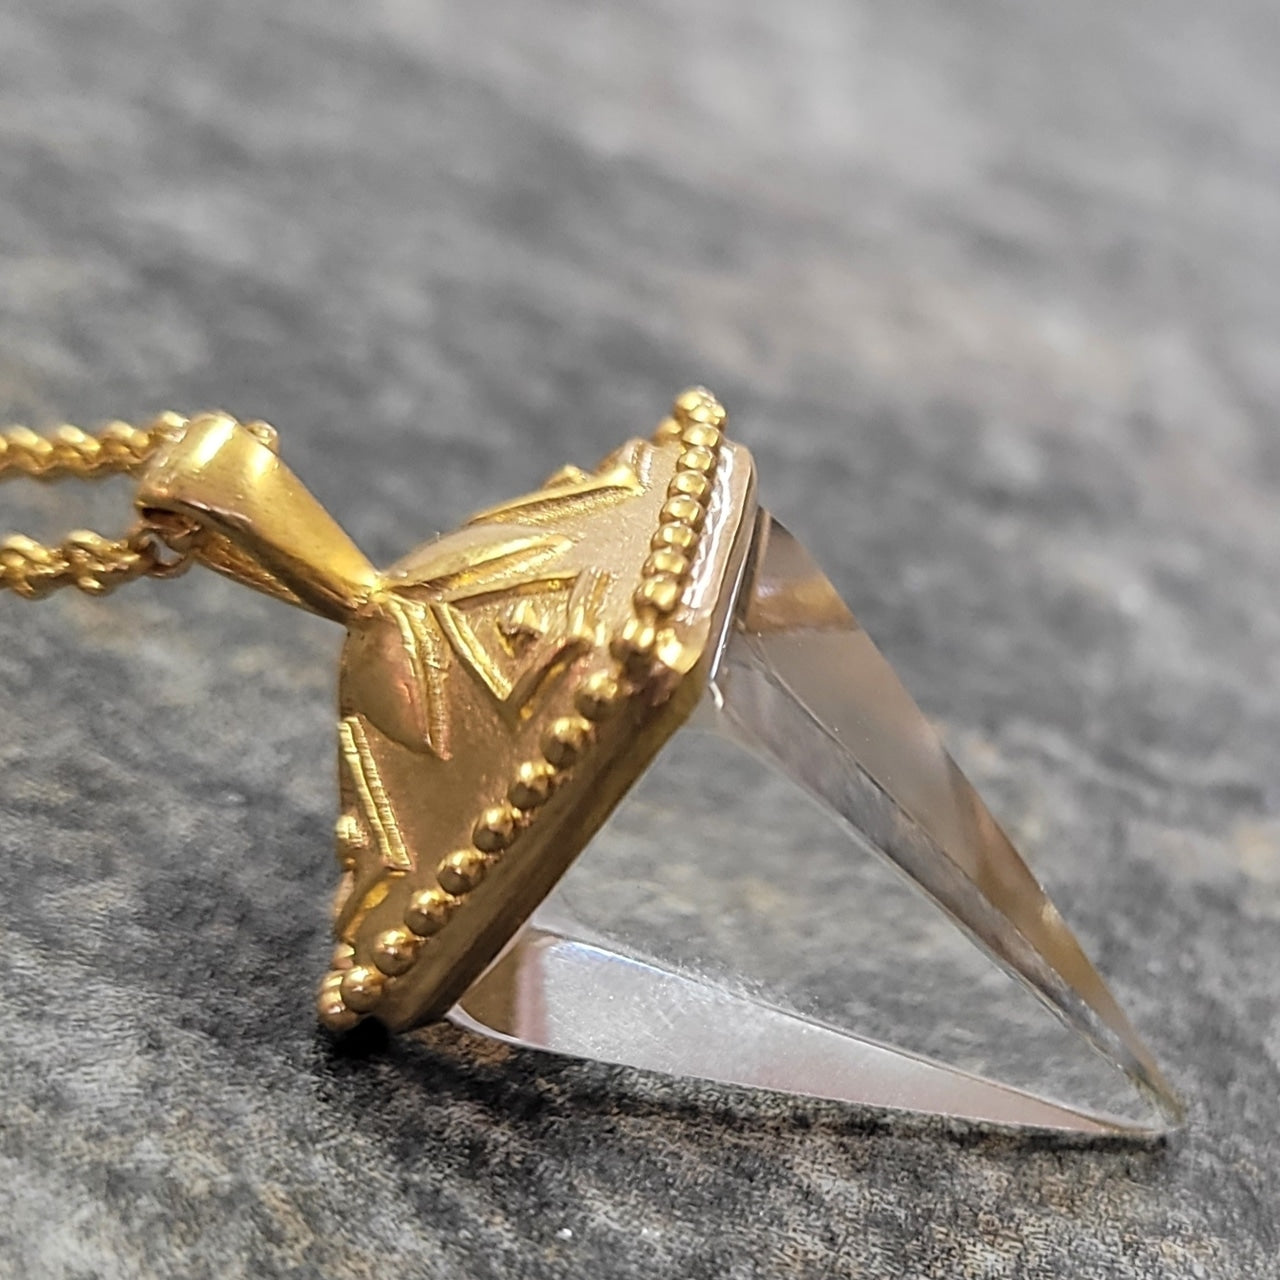 Crystal Pendulum Necklace